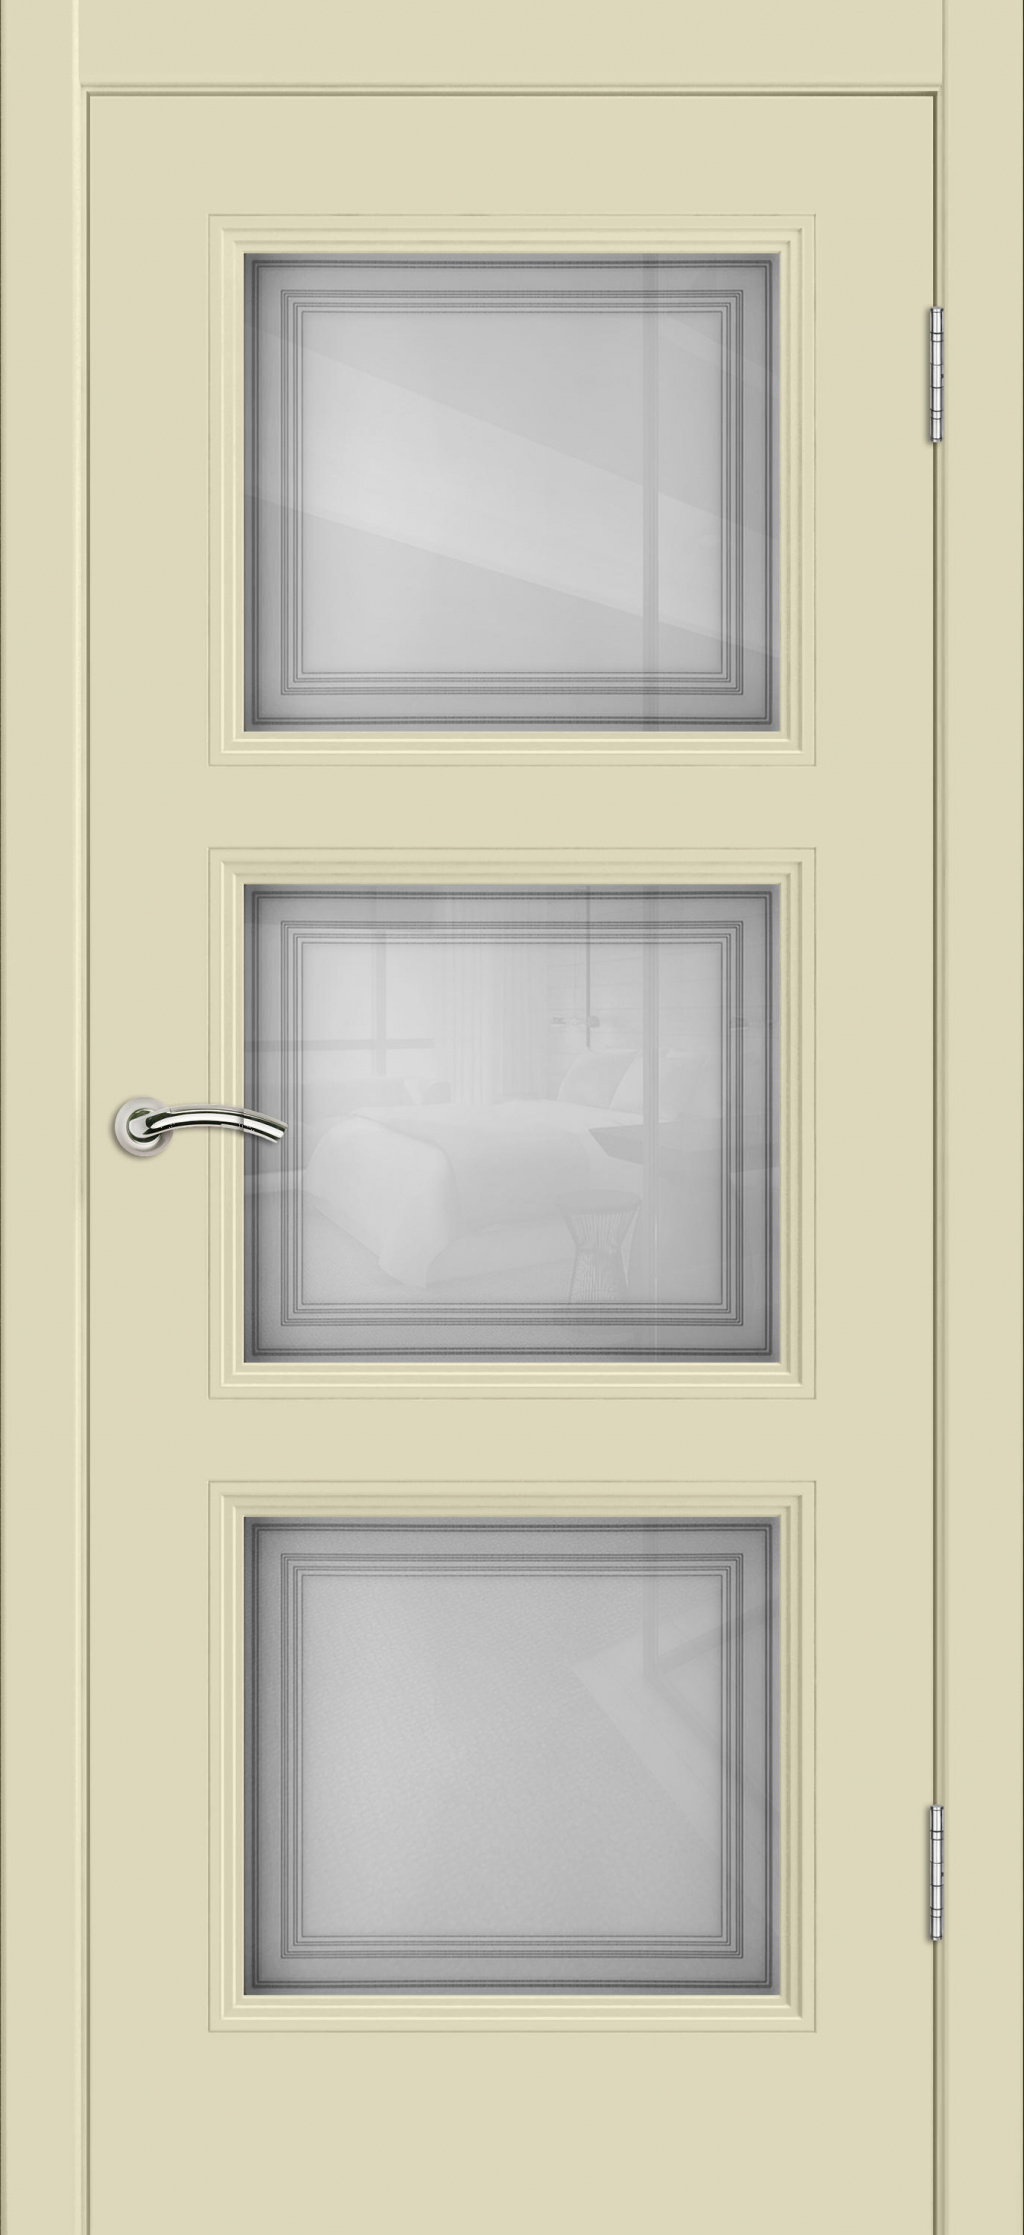 Cordondoor Межкомнатная дверь Vision 3 ПО Узор 1-3, арт. 19311 - фото №1